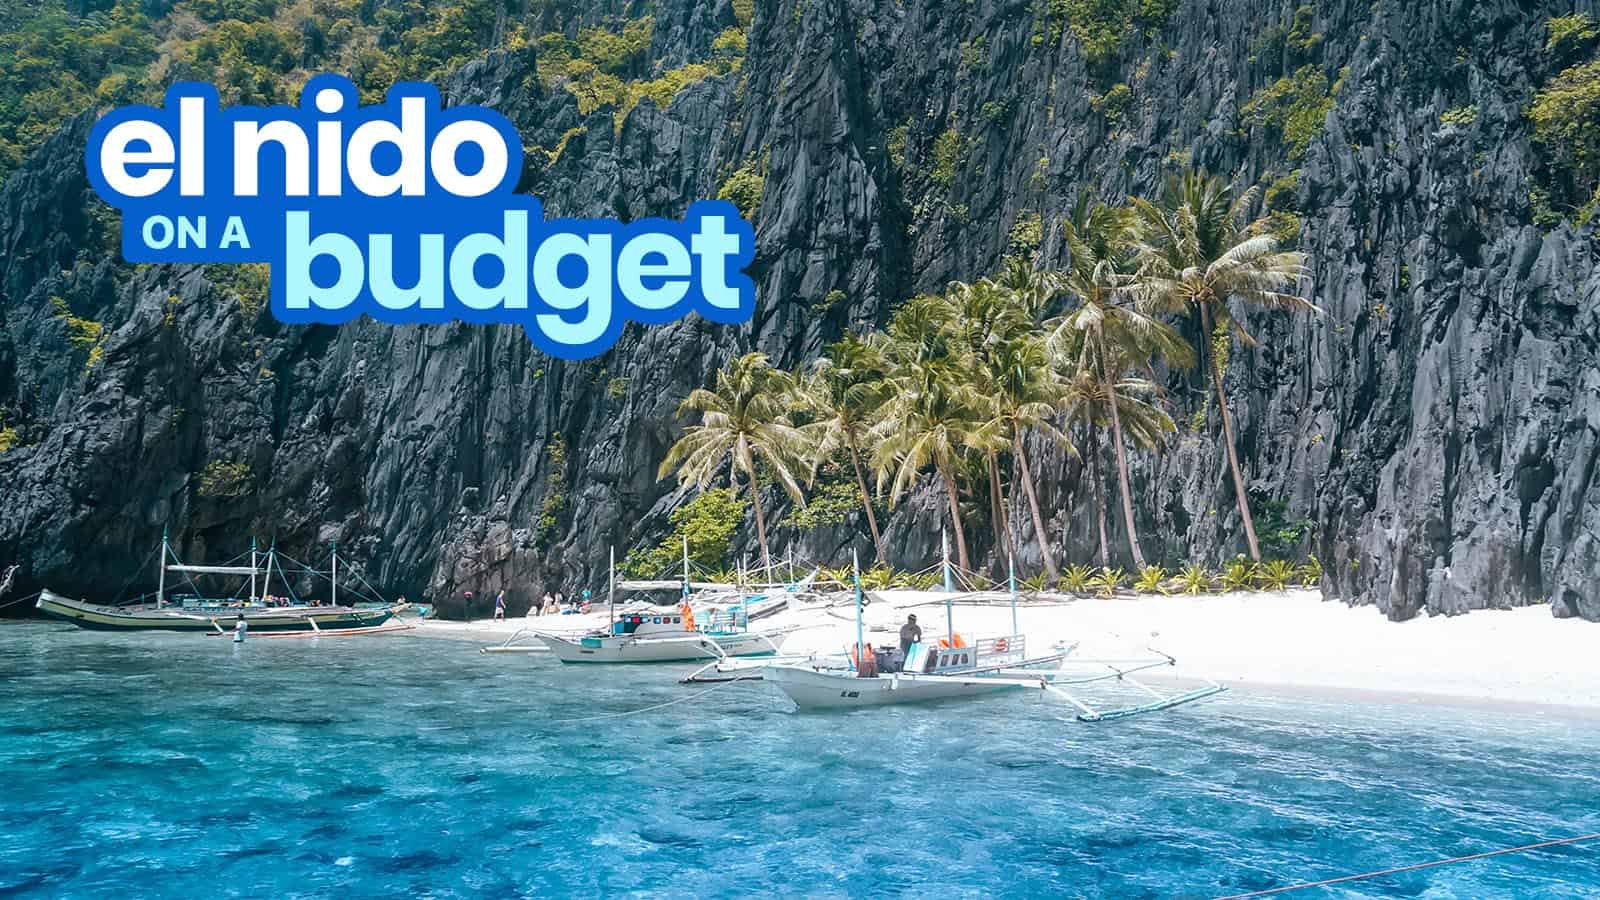 EL NIDO PALAWAN旅游指南与样行程和预算